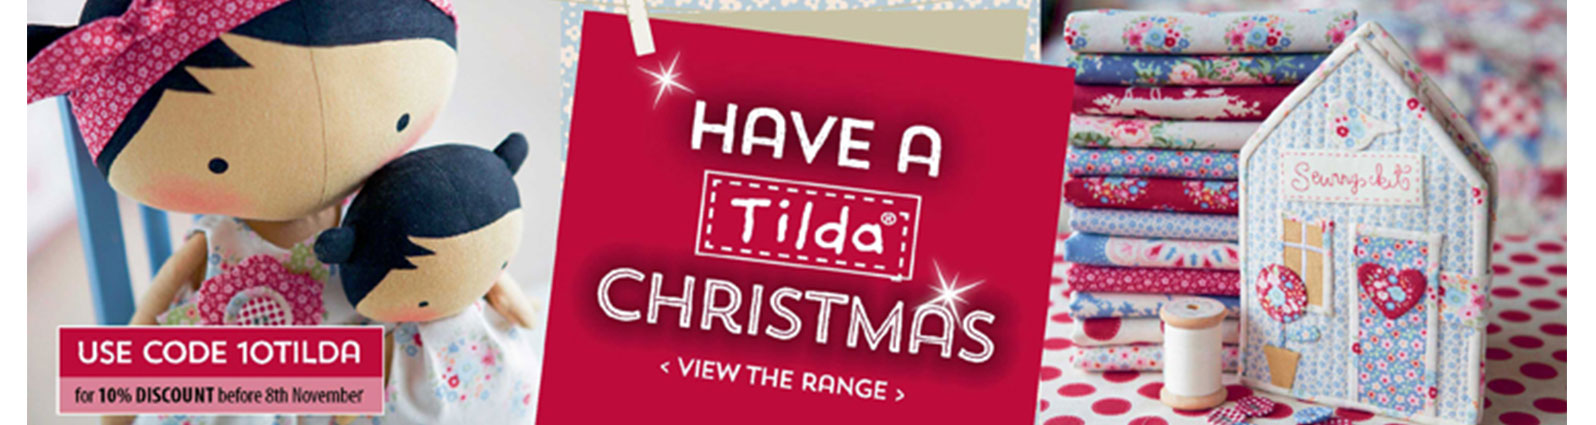 Have-a-Tilda-christmas